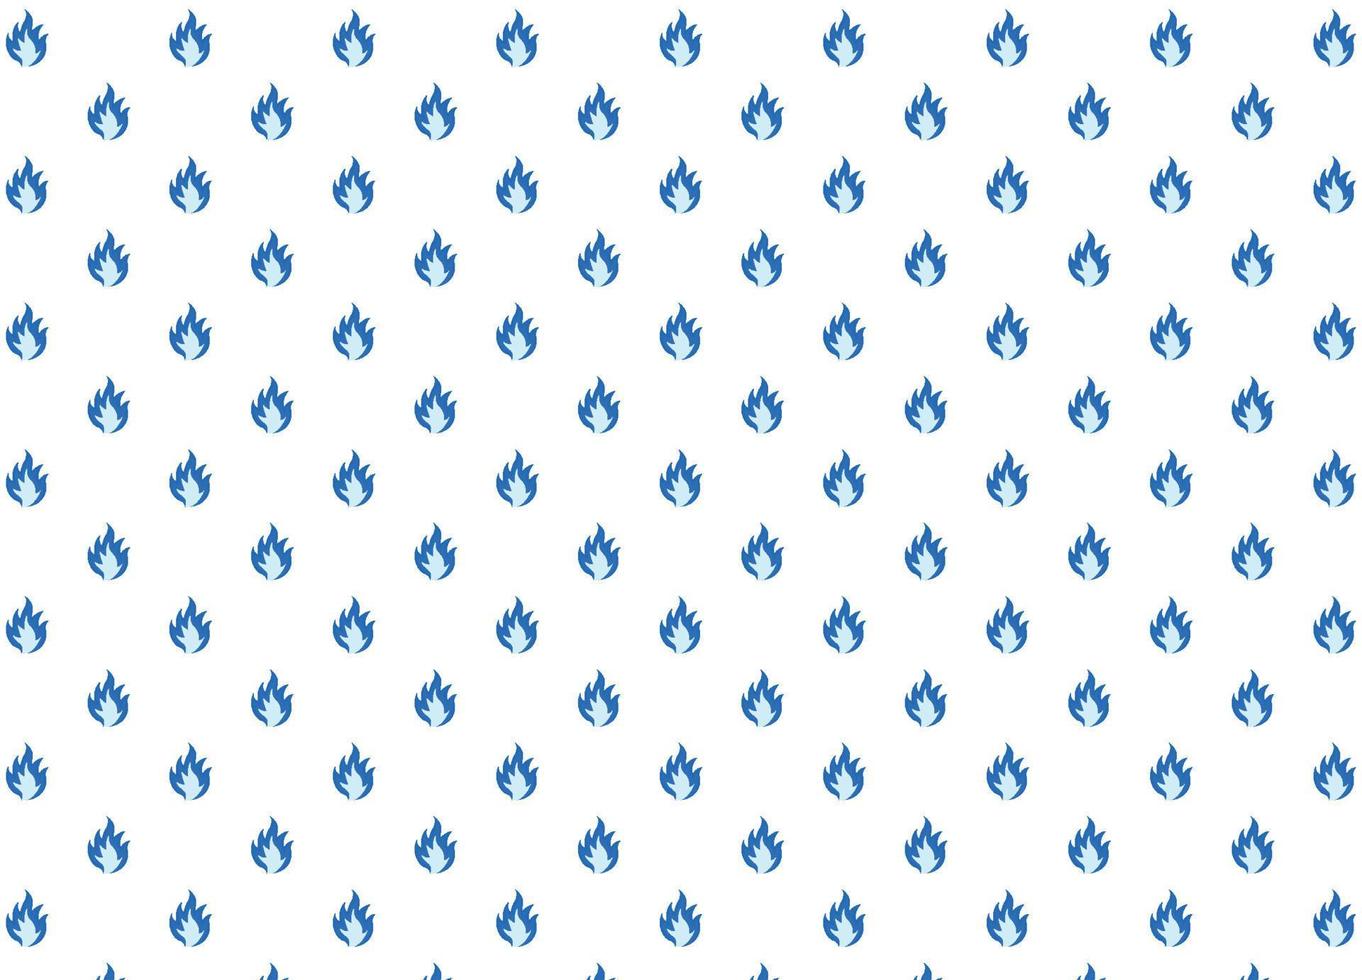 ensemble d'éléments d'illustration vectorielle de flammes bleues, arrière-plan, cadre, effets, mise en page. vecteur eps 10. dessin animé de flammes.